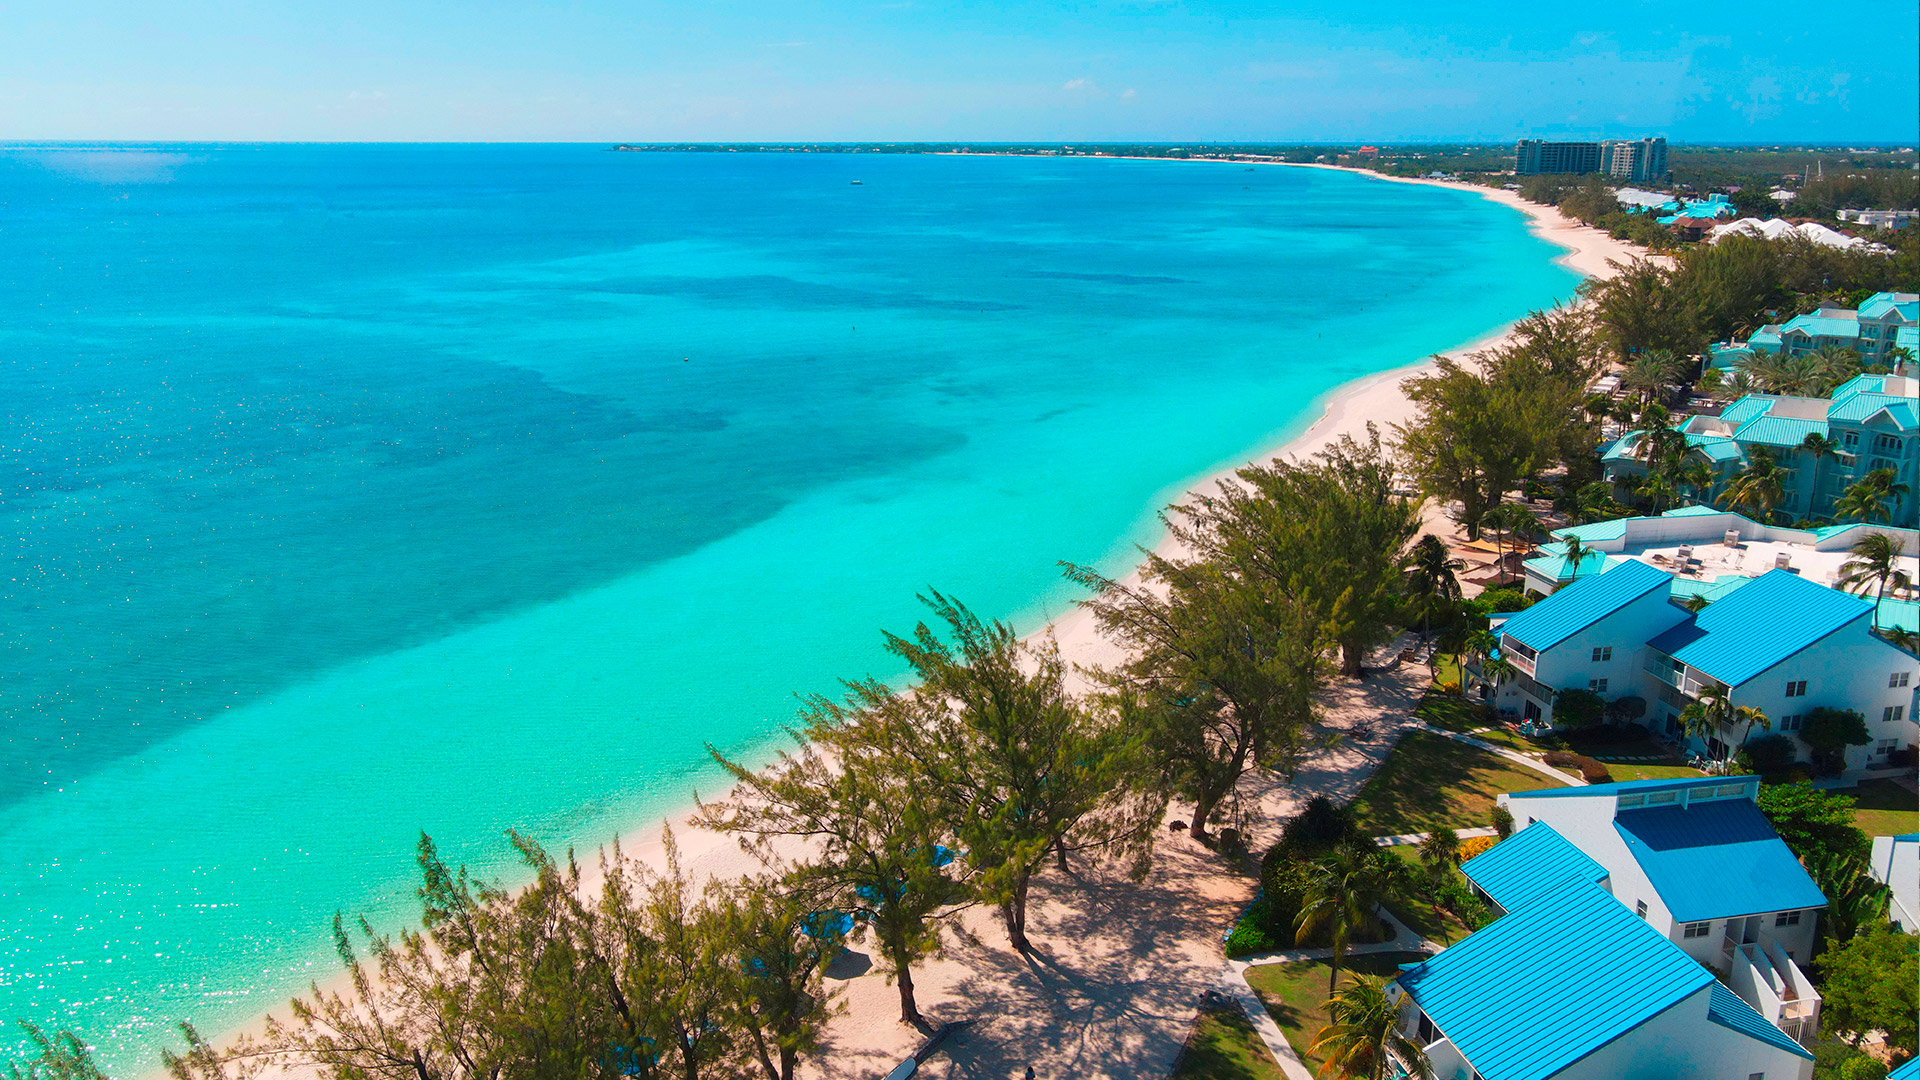 Grand Cayman Villa Rentals, Seven Mile Beach - Home page